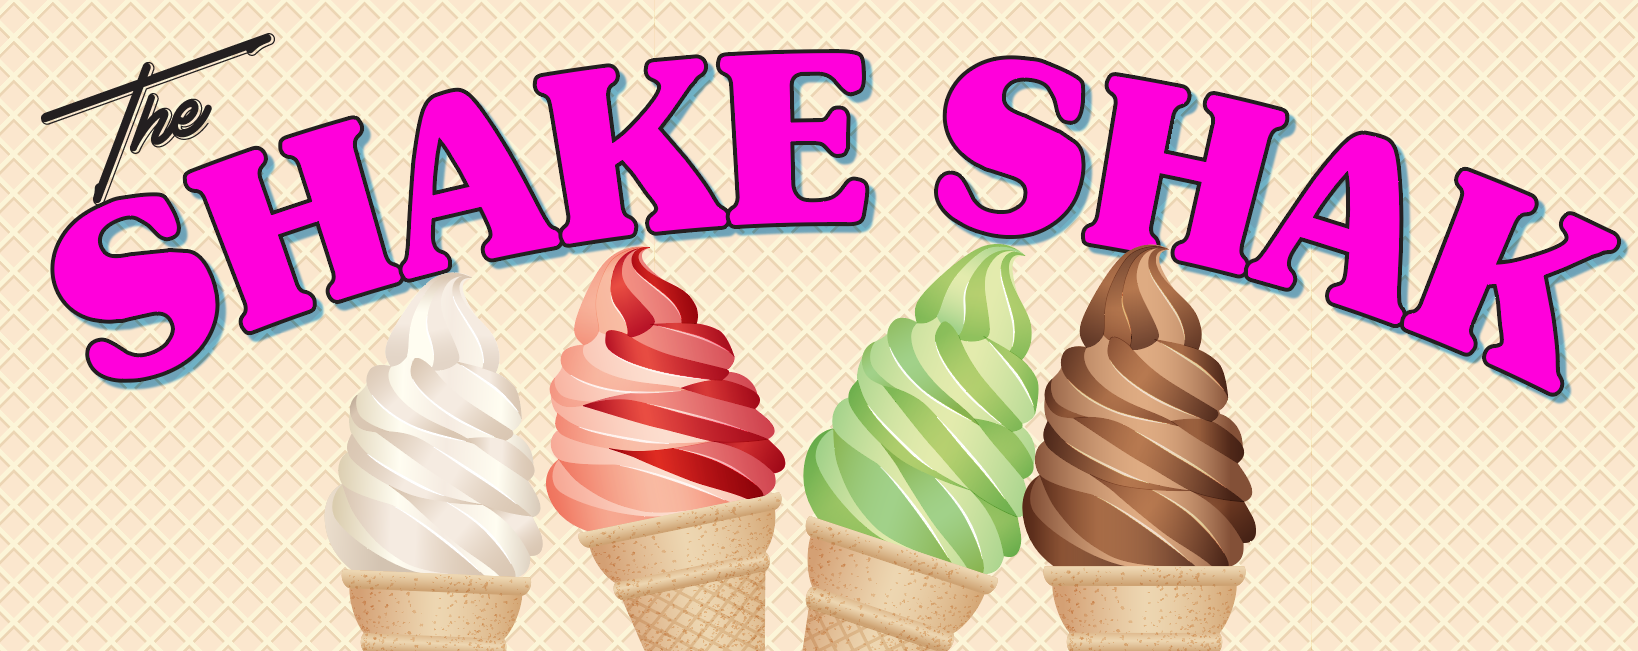 The Shake Shak Logo